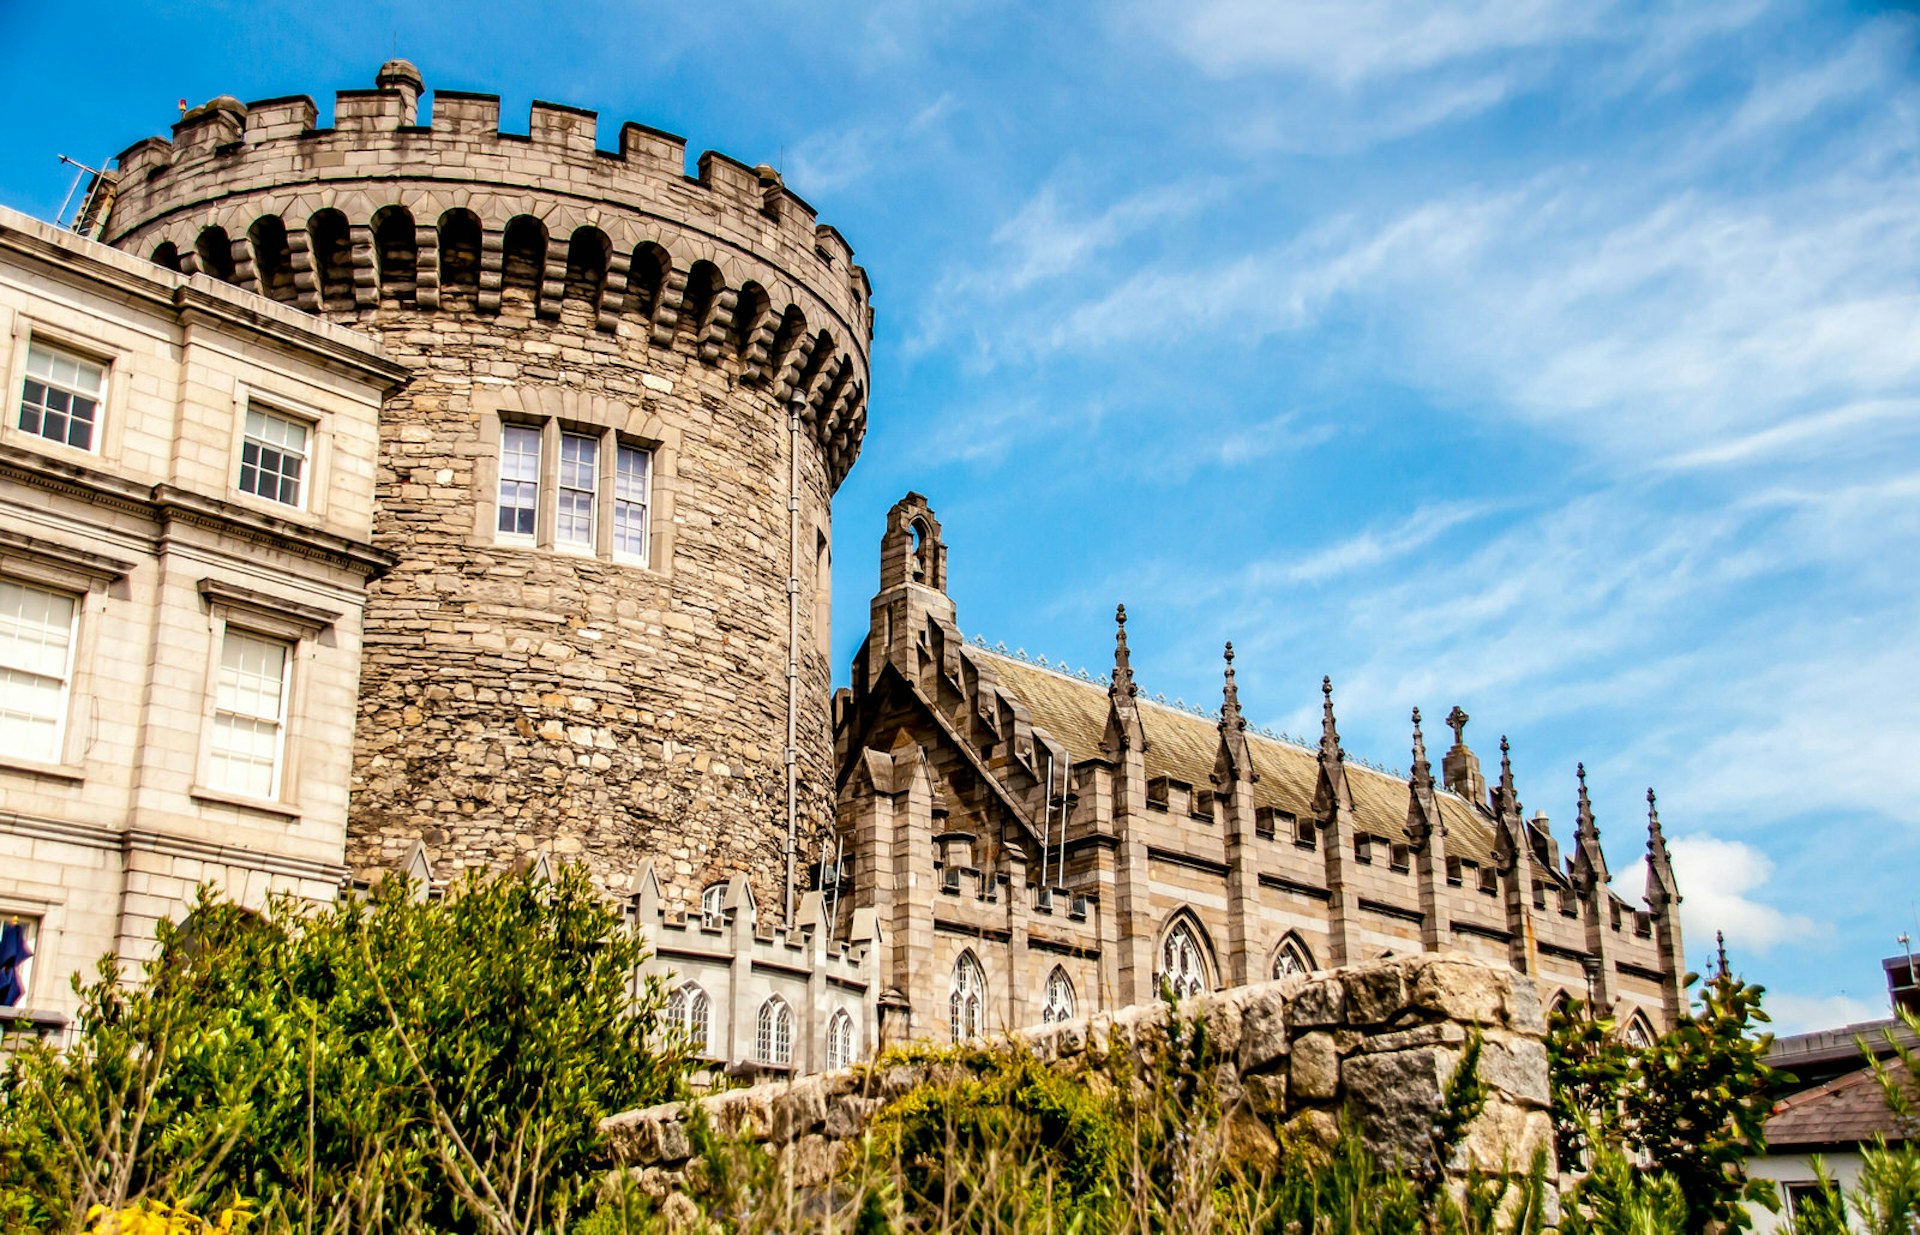 Dublin Castle © Bernabe Blanco / Shutterstock